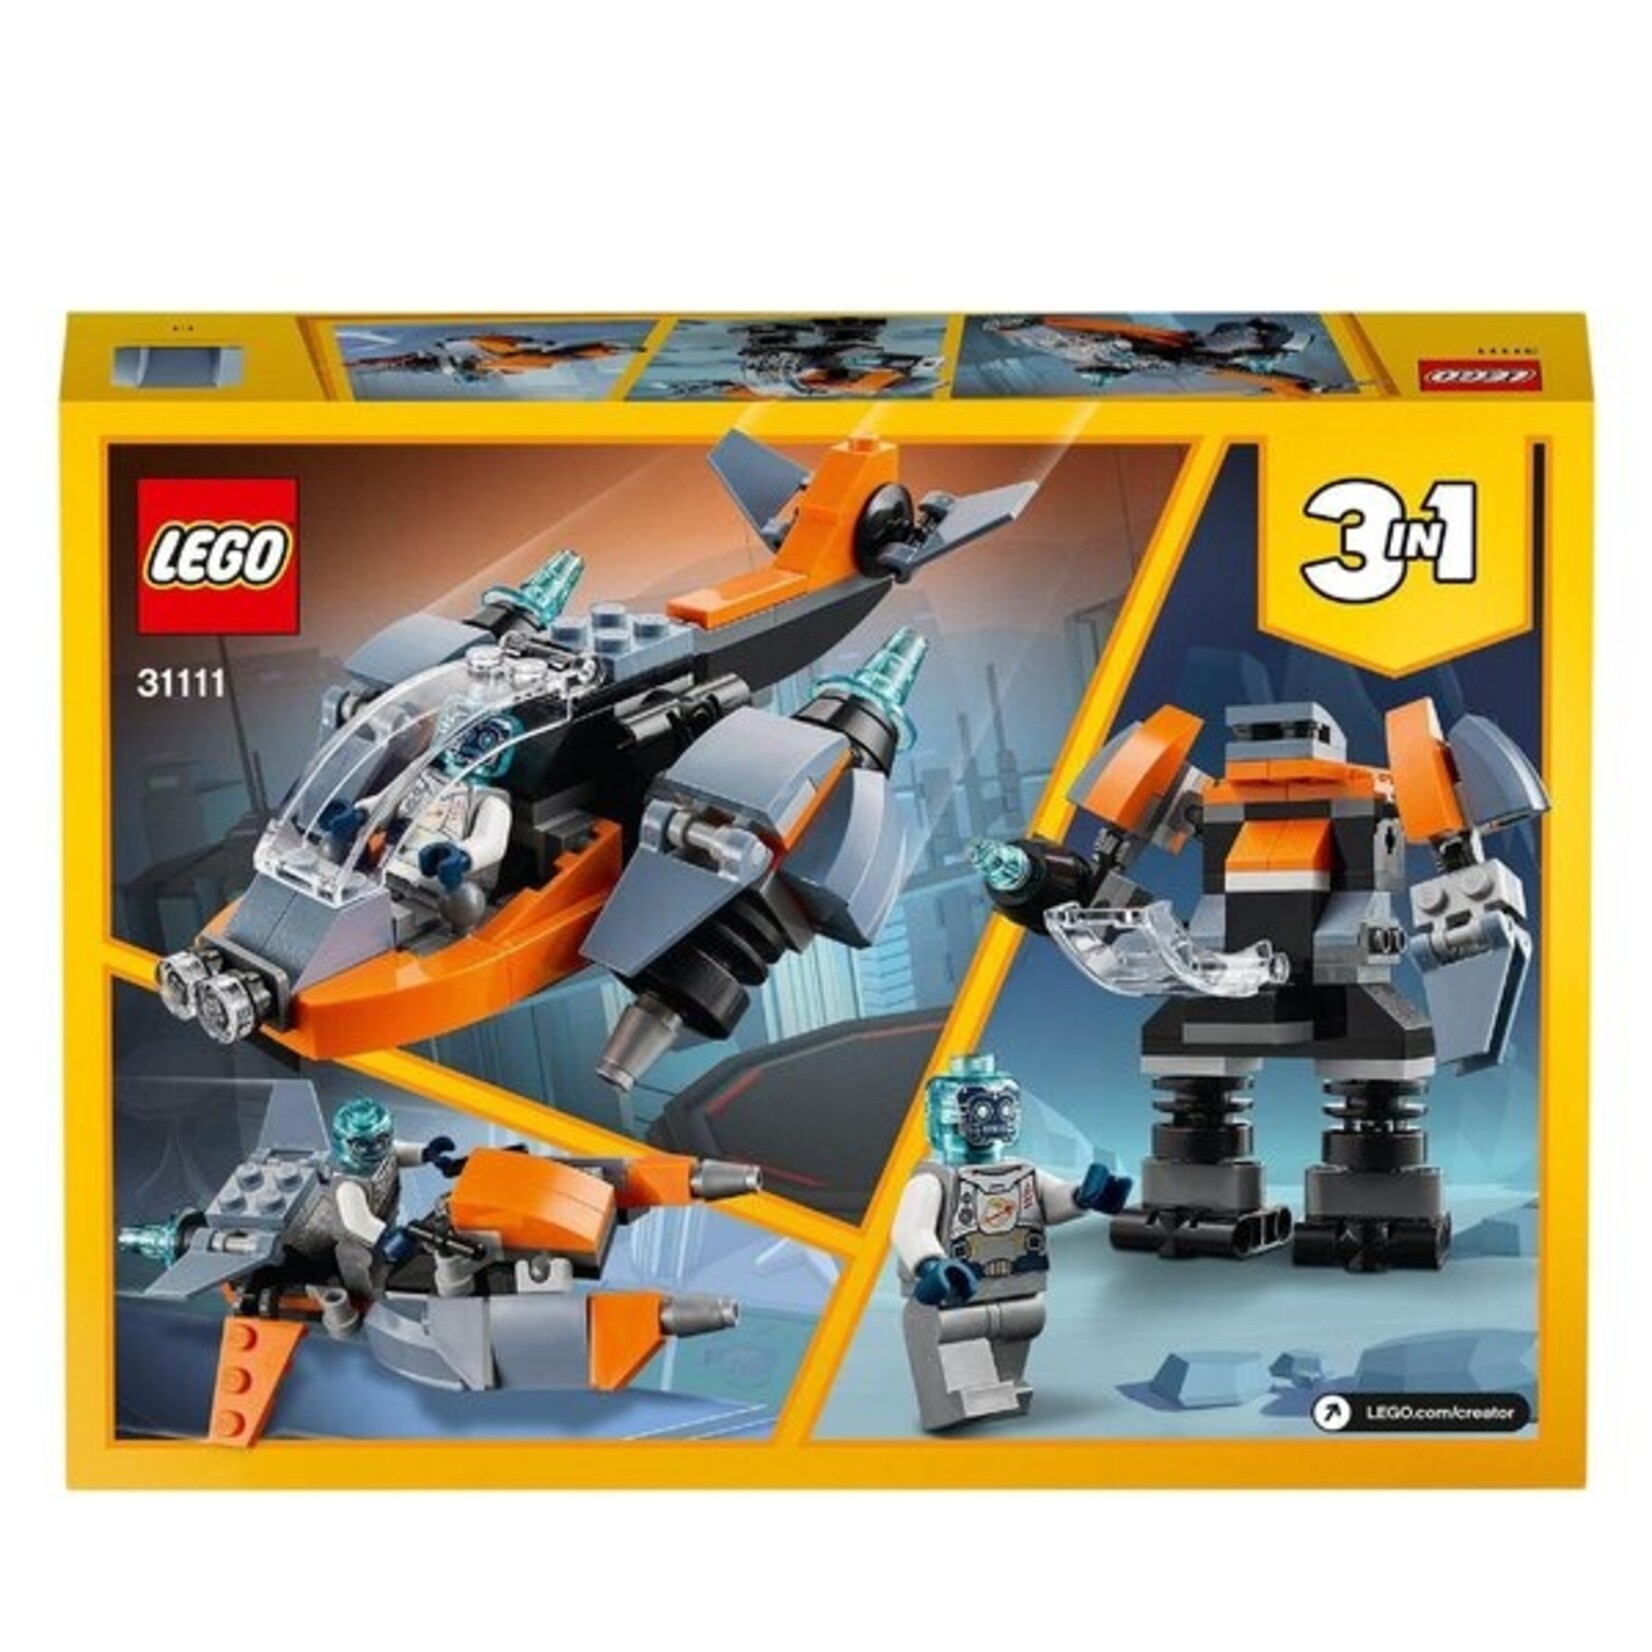 LEGO Cyberdrone - 31111